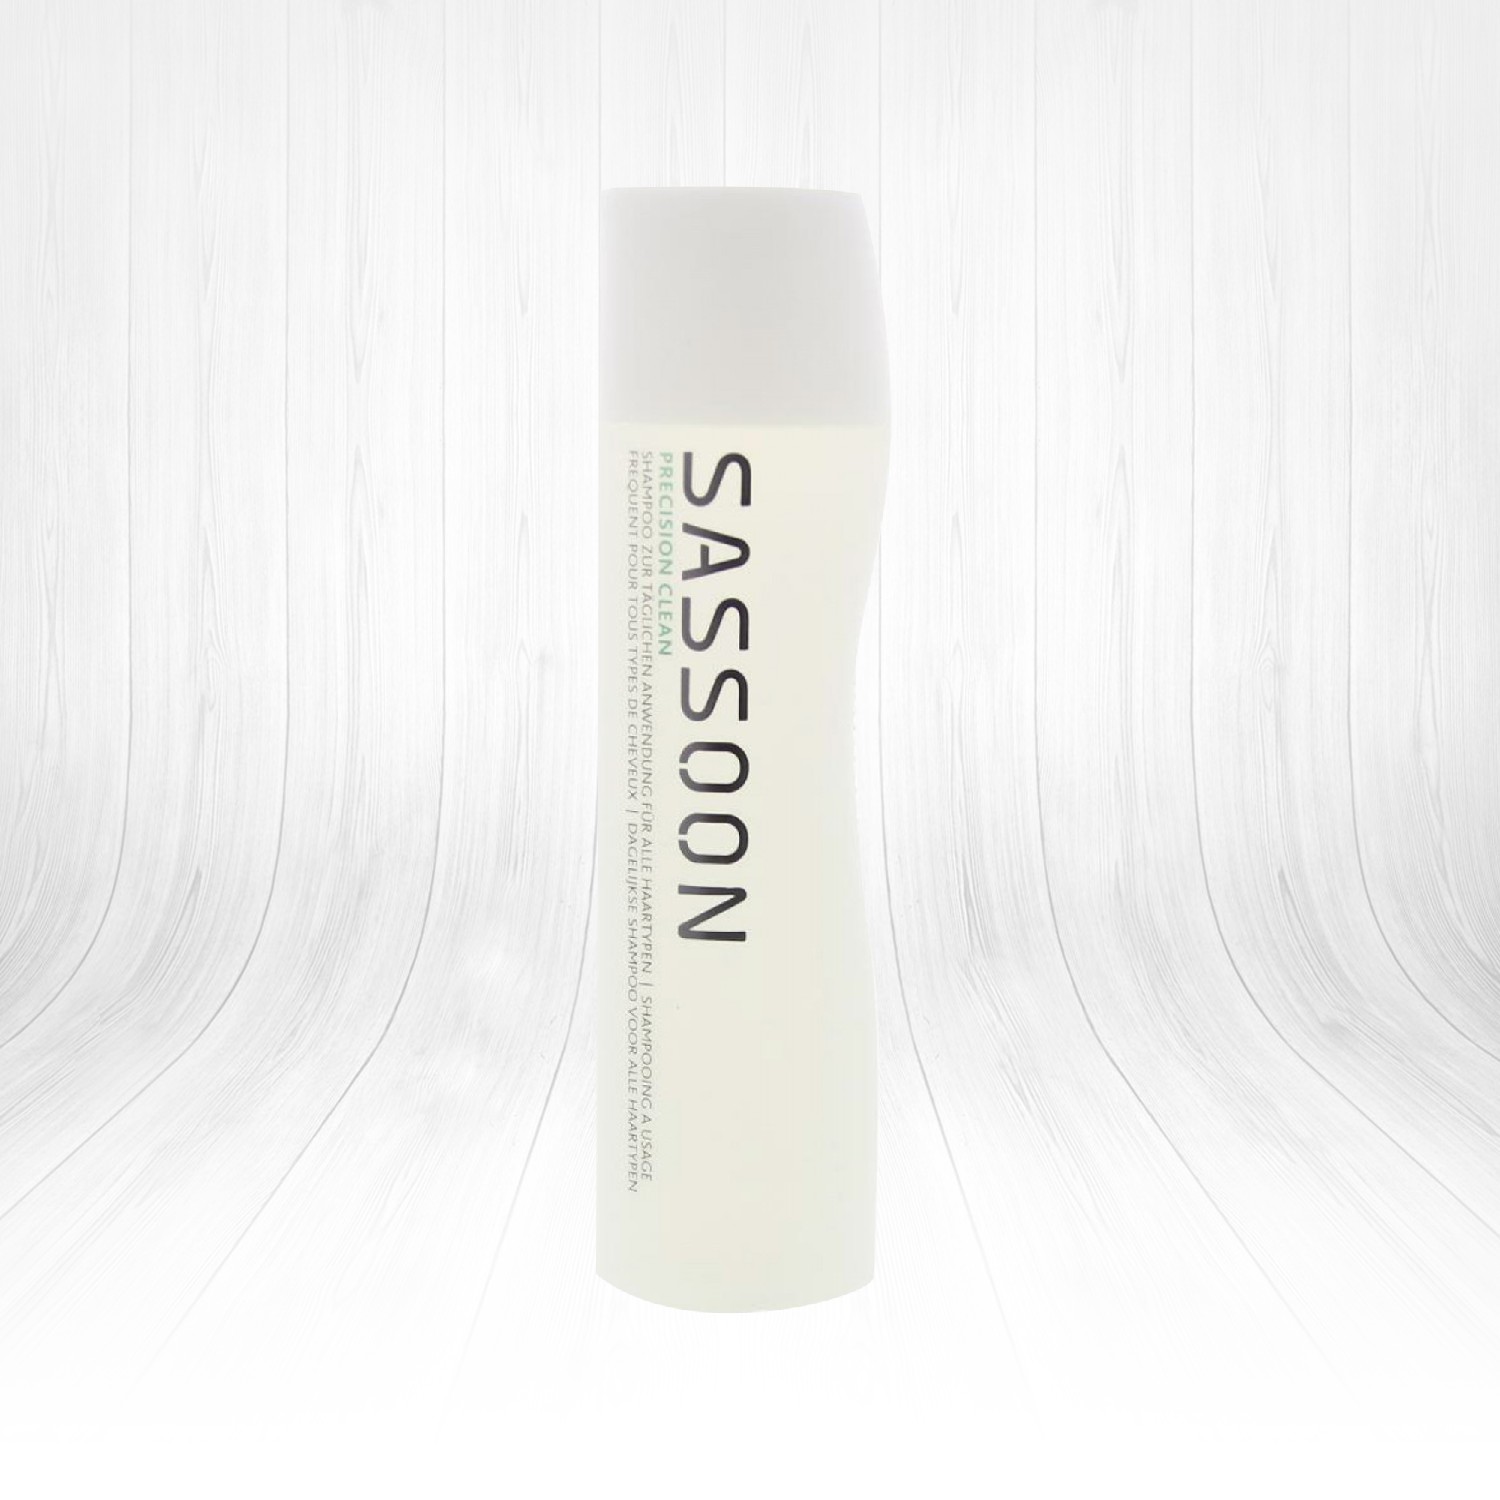 Sassoon Precision Clean Günlük Bakım Şampuanı